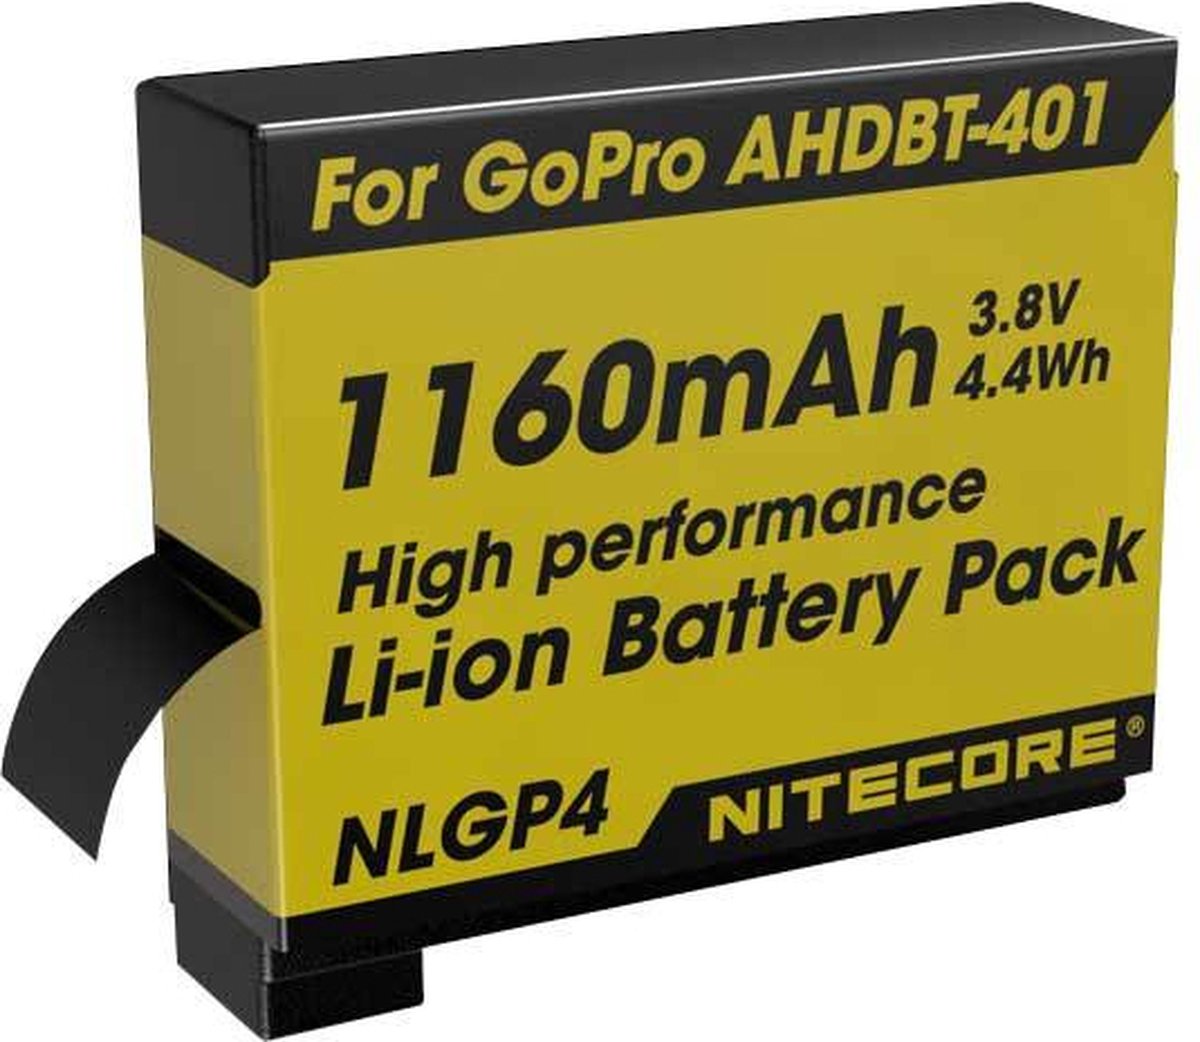 Nitecore Batterij NLGP4 Oplaadbaar voor de GP4-Serie